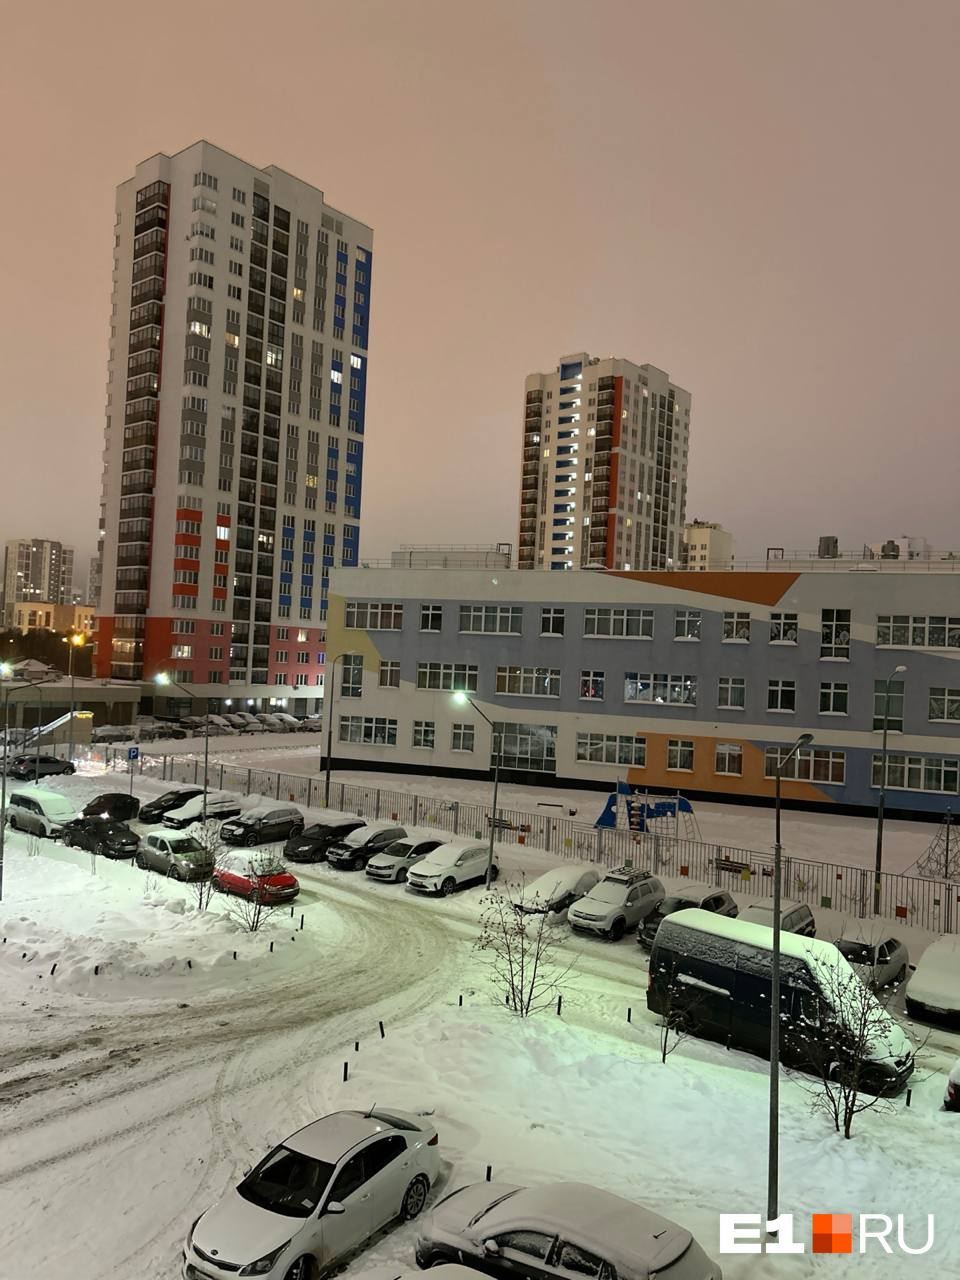 В Екатеринбурге среди ночи стало светло как днем. Что происходит?